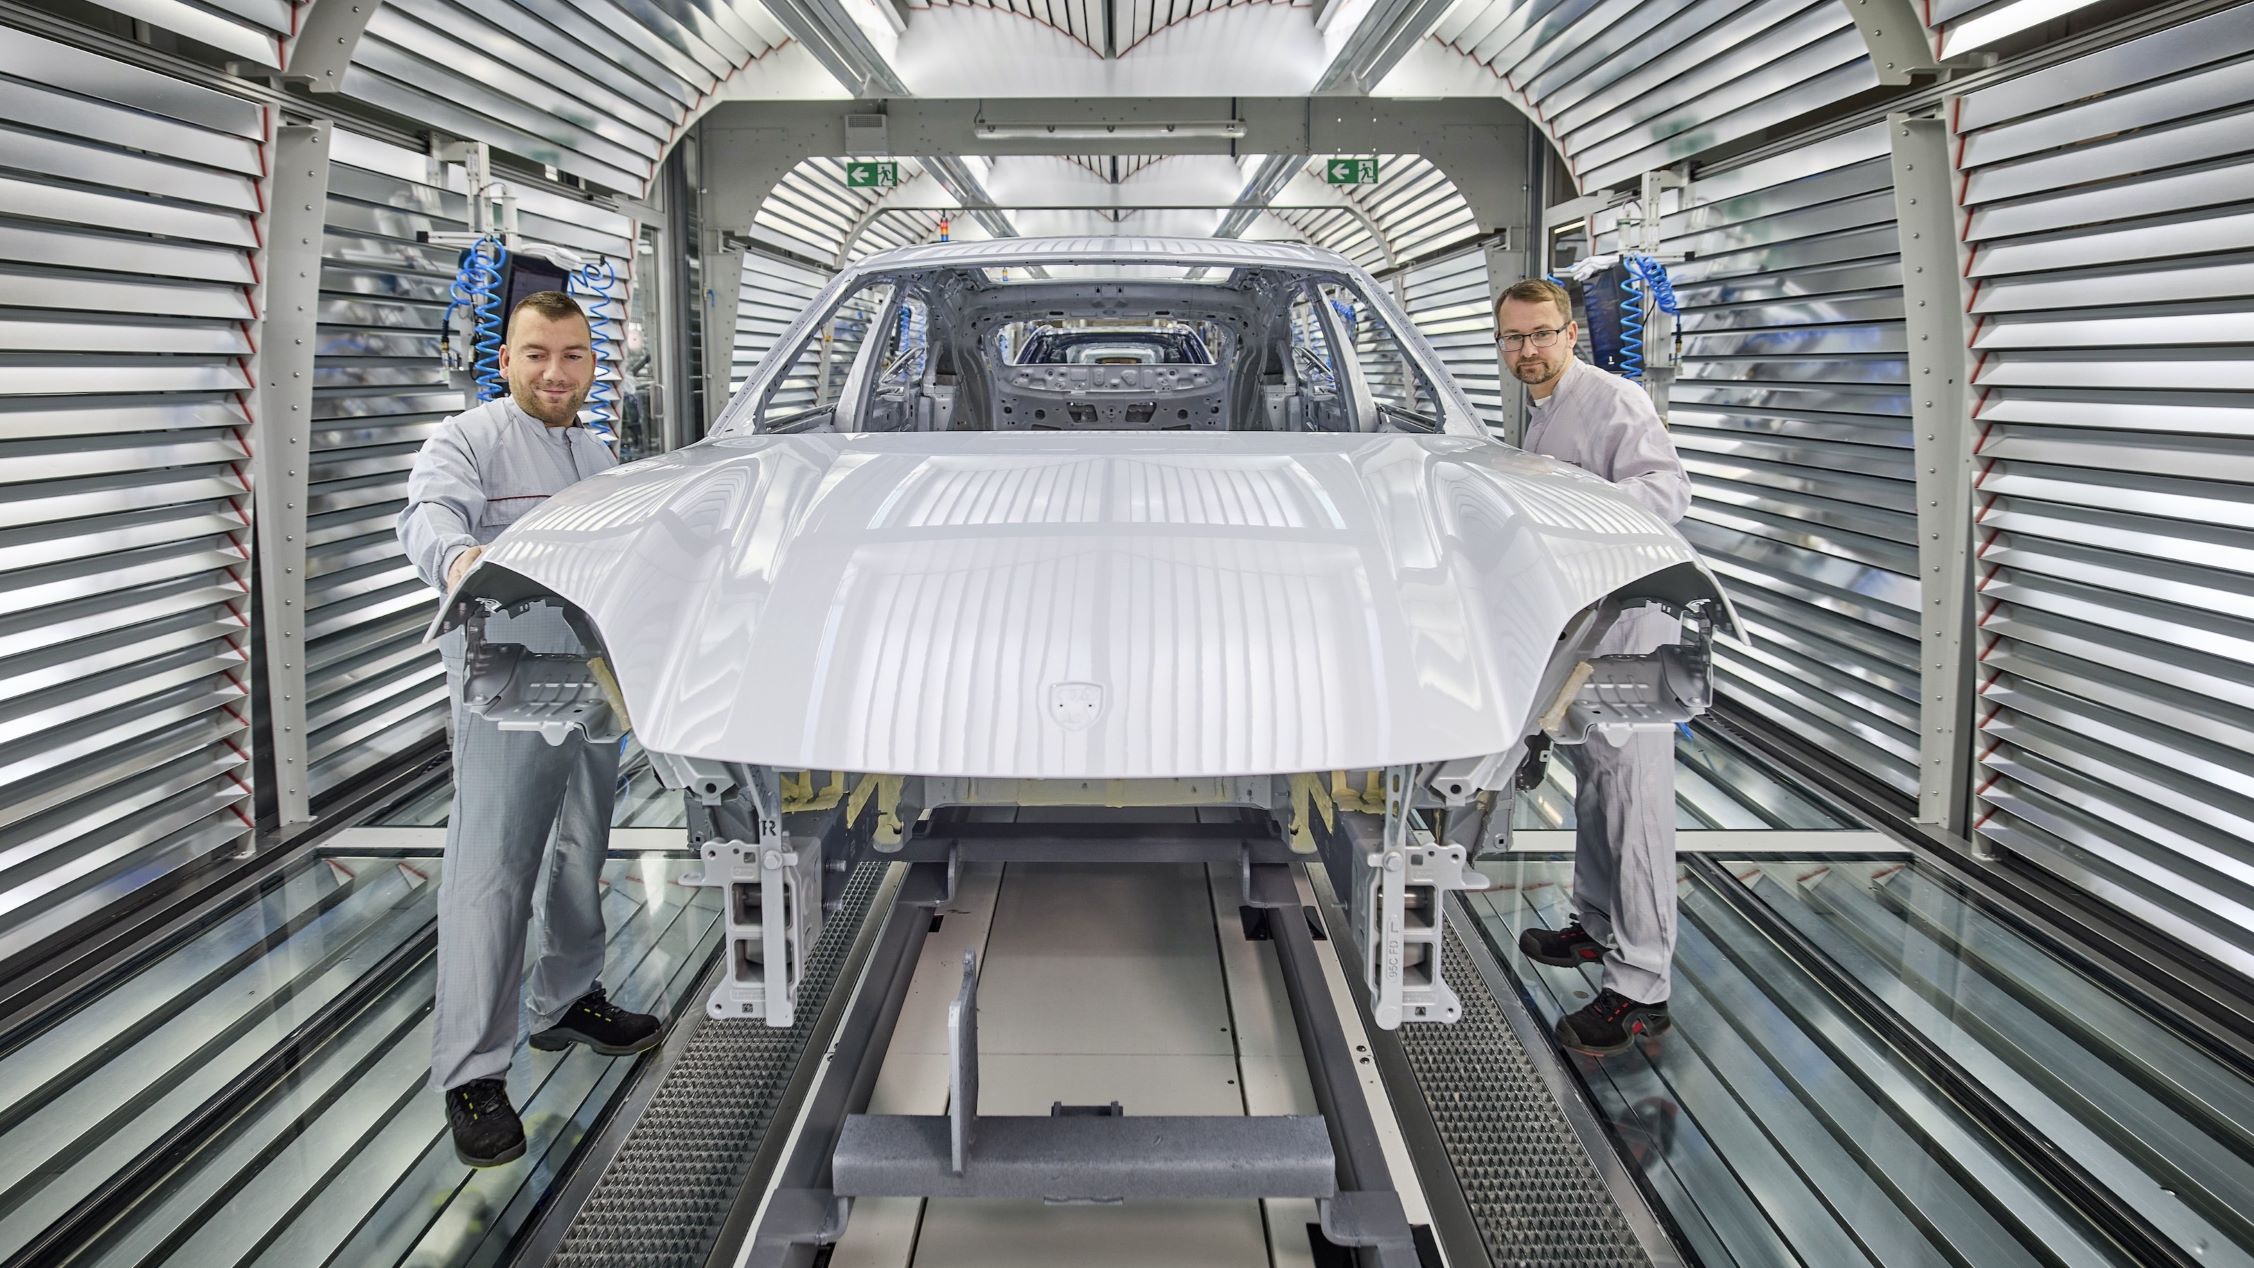 La escasez de aluminio amenaza la producción automotriz global